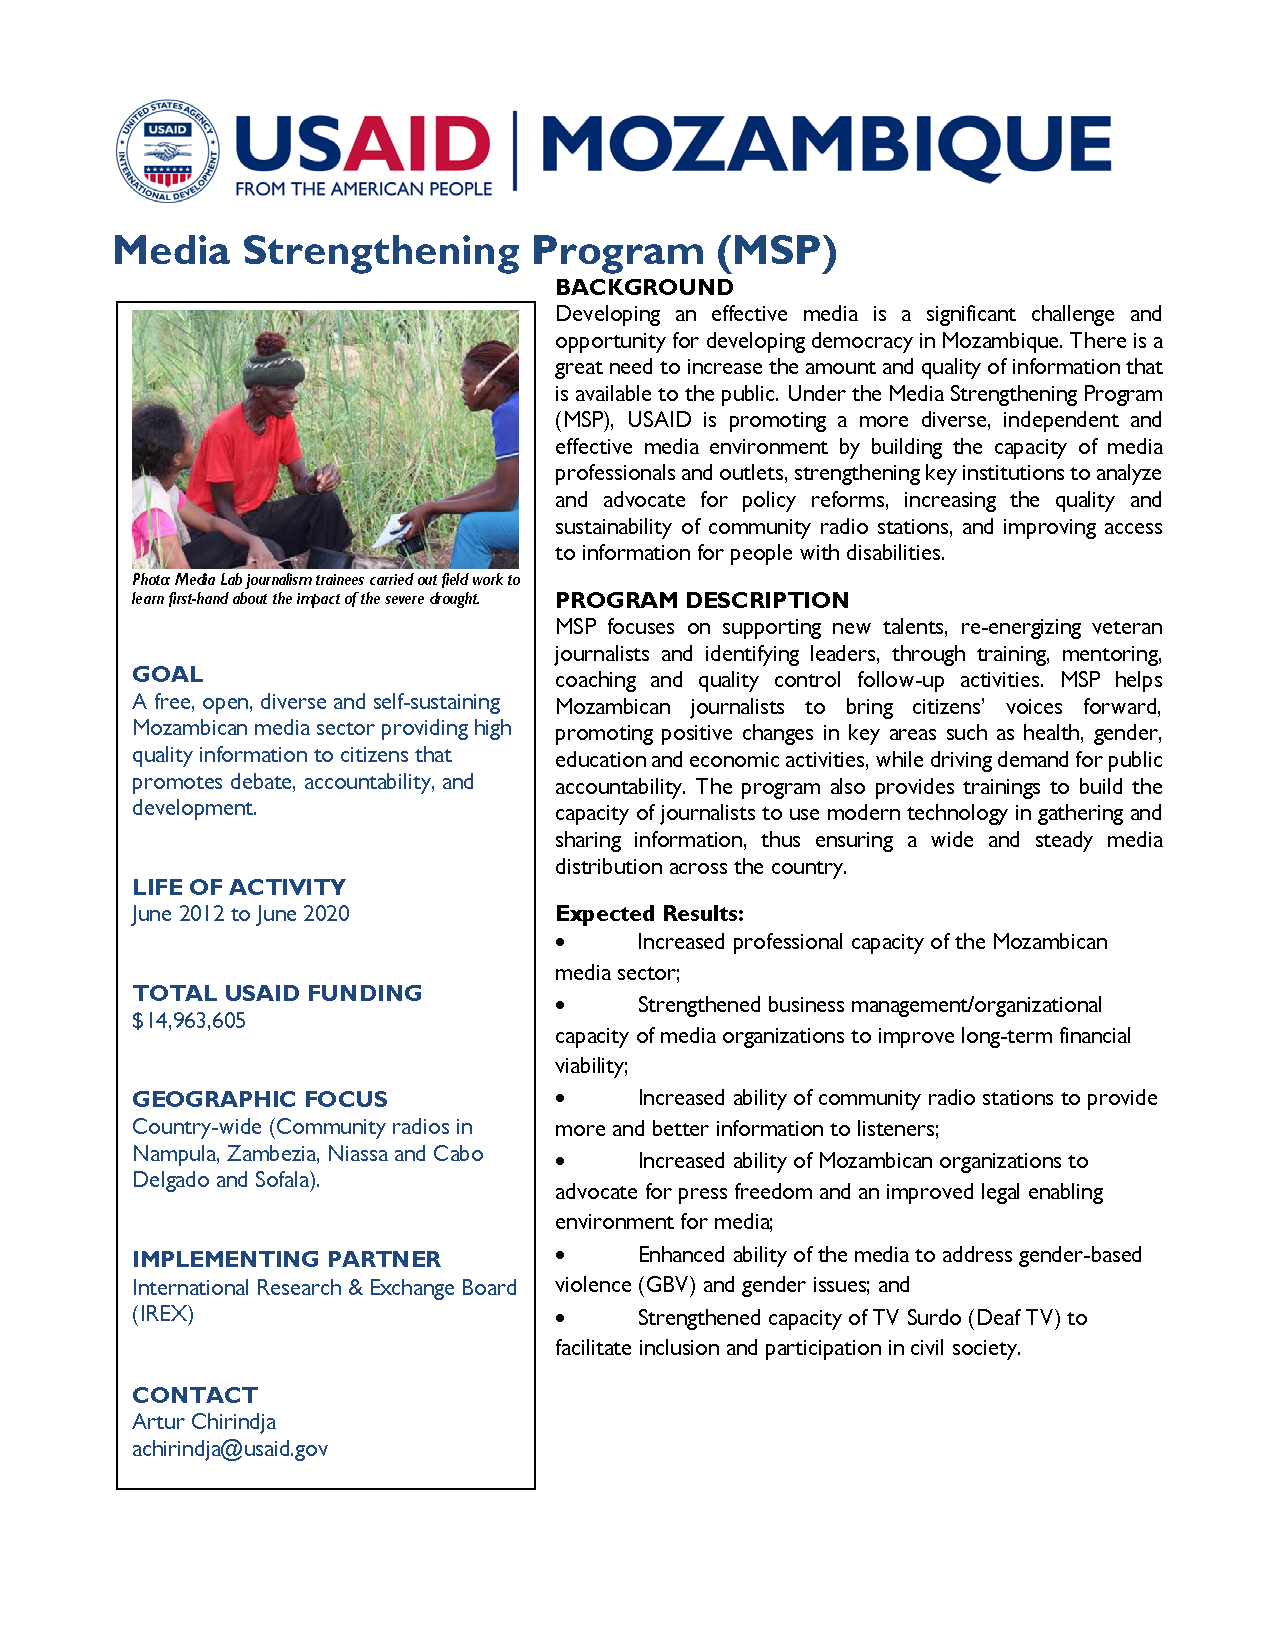 Media Strengthening Program (MSP) Fact Sheet